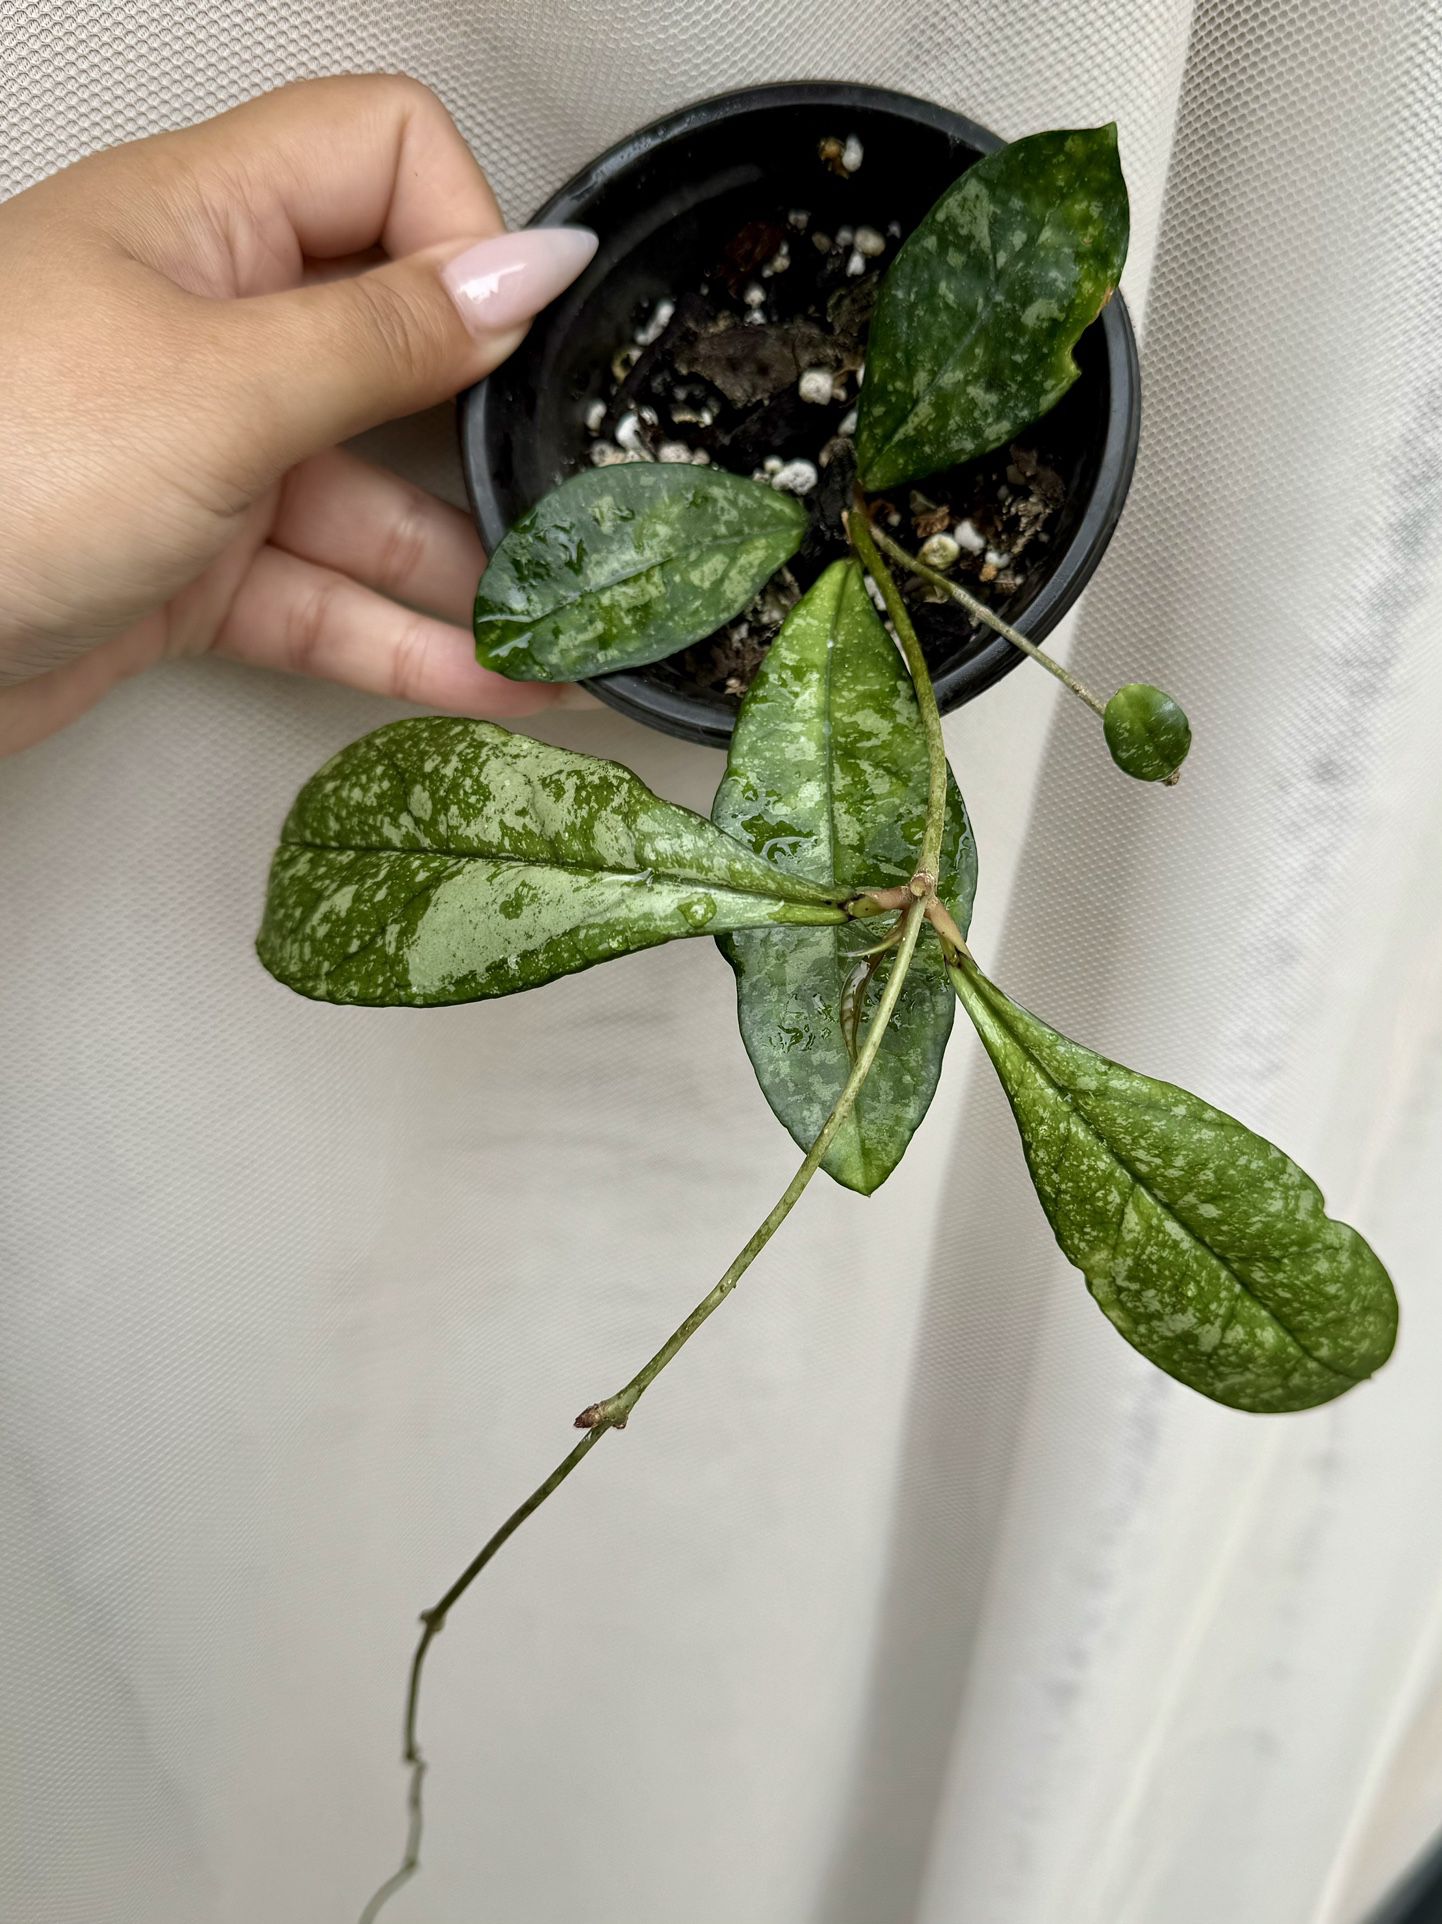 Hoya Crassipetiolata Splash - 4” Pot